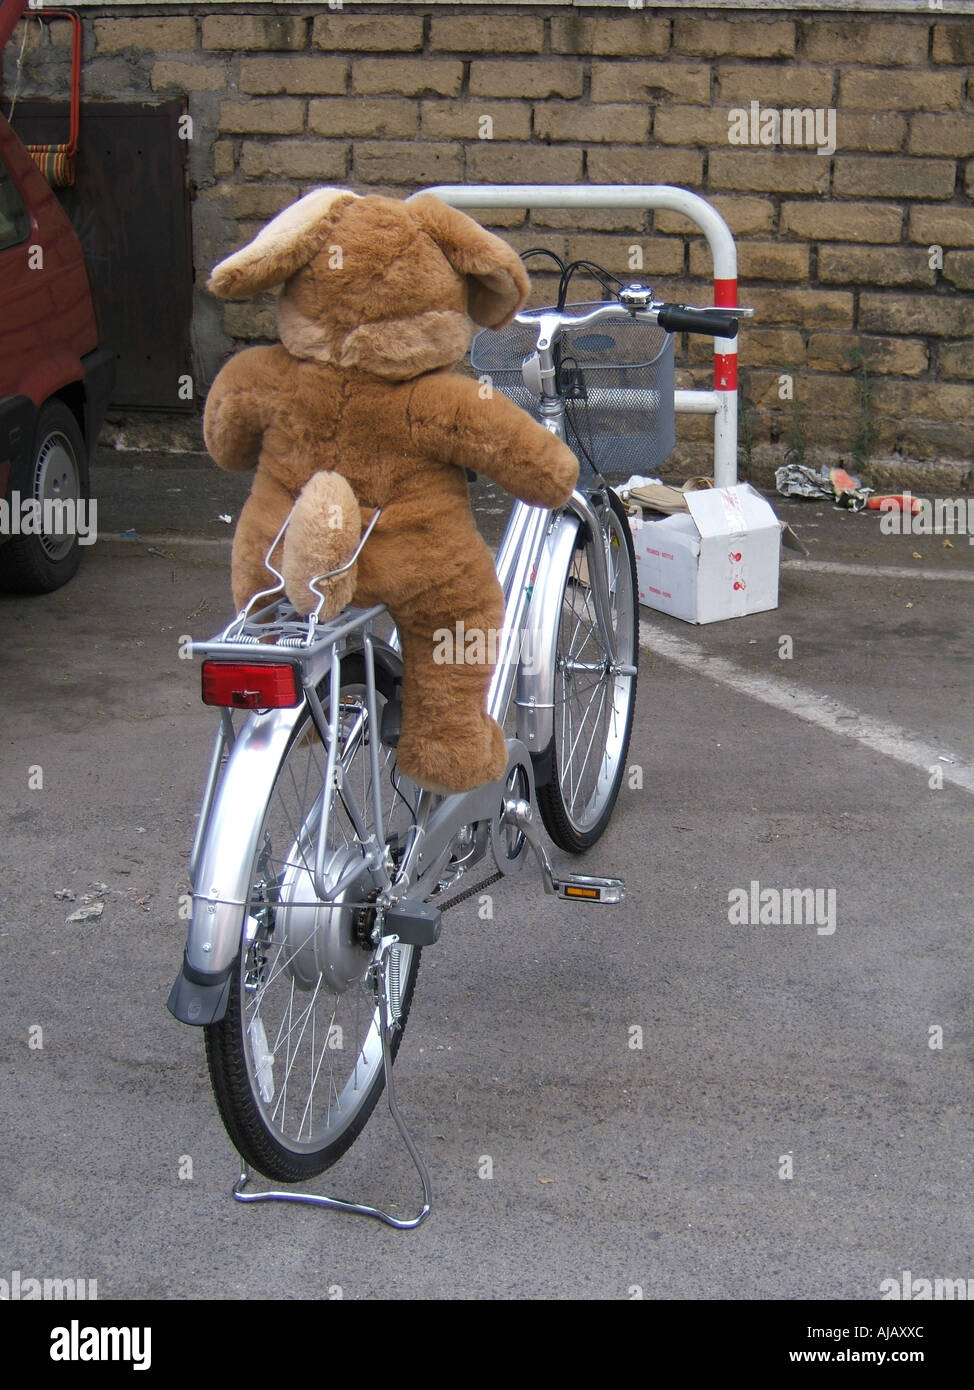 teddy bear soft toy bike in city street Stock Photo - Alamy